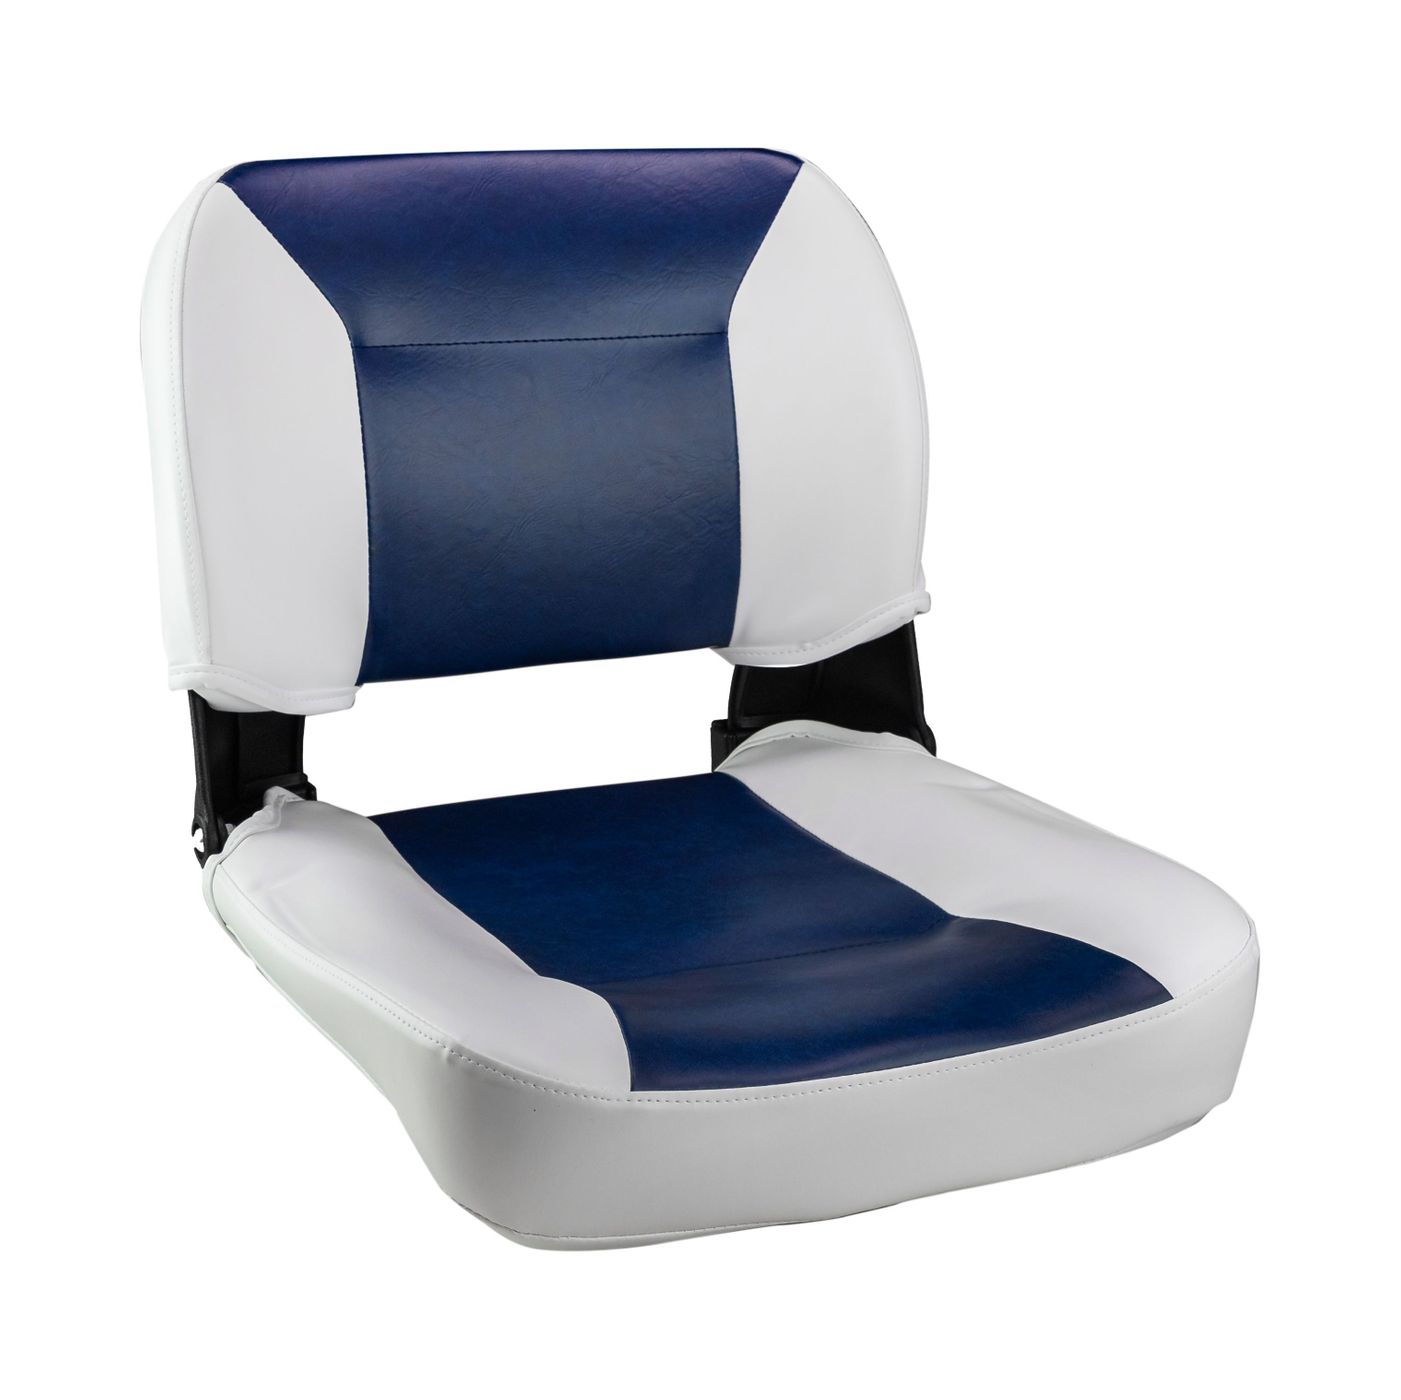 Кресло складное, цвет белый/синий C12510WL кресло шезлонг складное со съемным матрасом и декоративной подушкой haushalt hhk6 bl синий